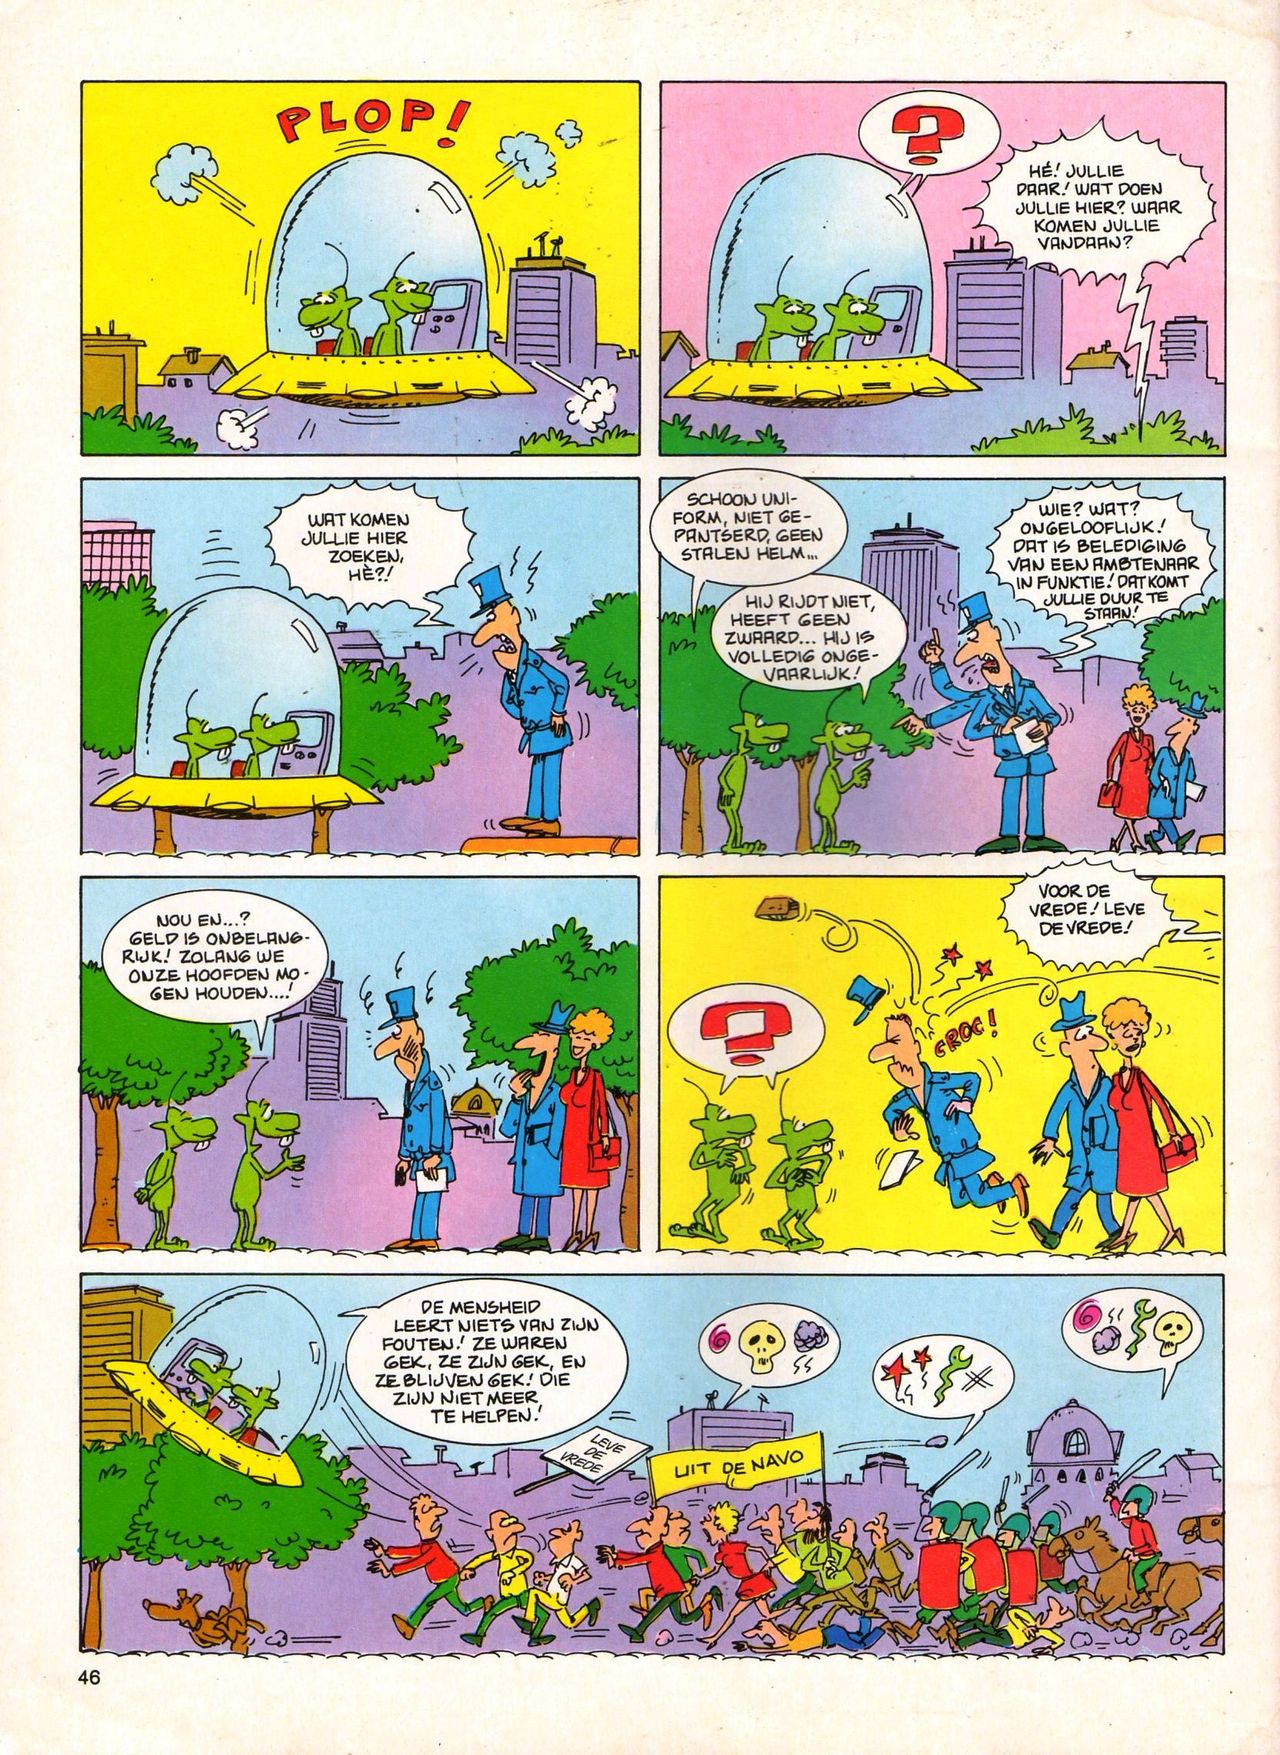 Het Is Groen En Het.. - 04 - Mag Ik Die Ballen.. OH, PARDON! (Dutch) Een oude humoristische serie van Pat Mallet 46